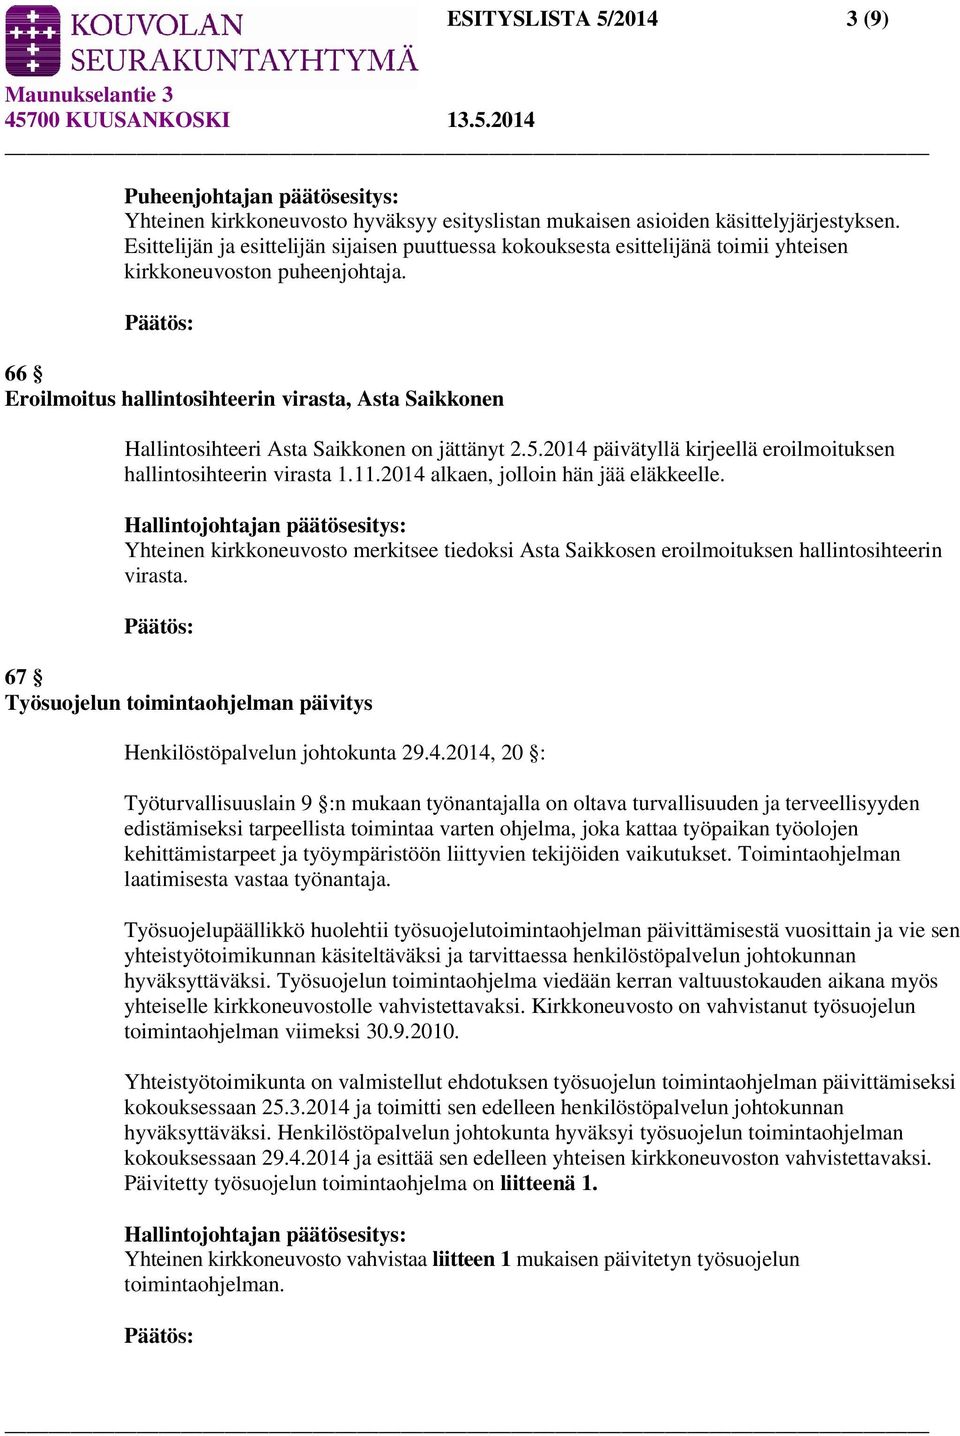 66 Eroilmoitus hallintosihteerin virasta, Asta Saikkonen Hallintosihteeri Asta Saikkonen on jättänyt 2.5.2014 päivätyllä kirjeellä eroilmoituksen hallintosihteerin virasta 1.11.